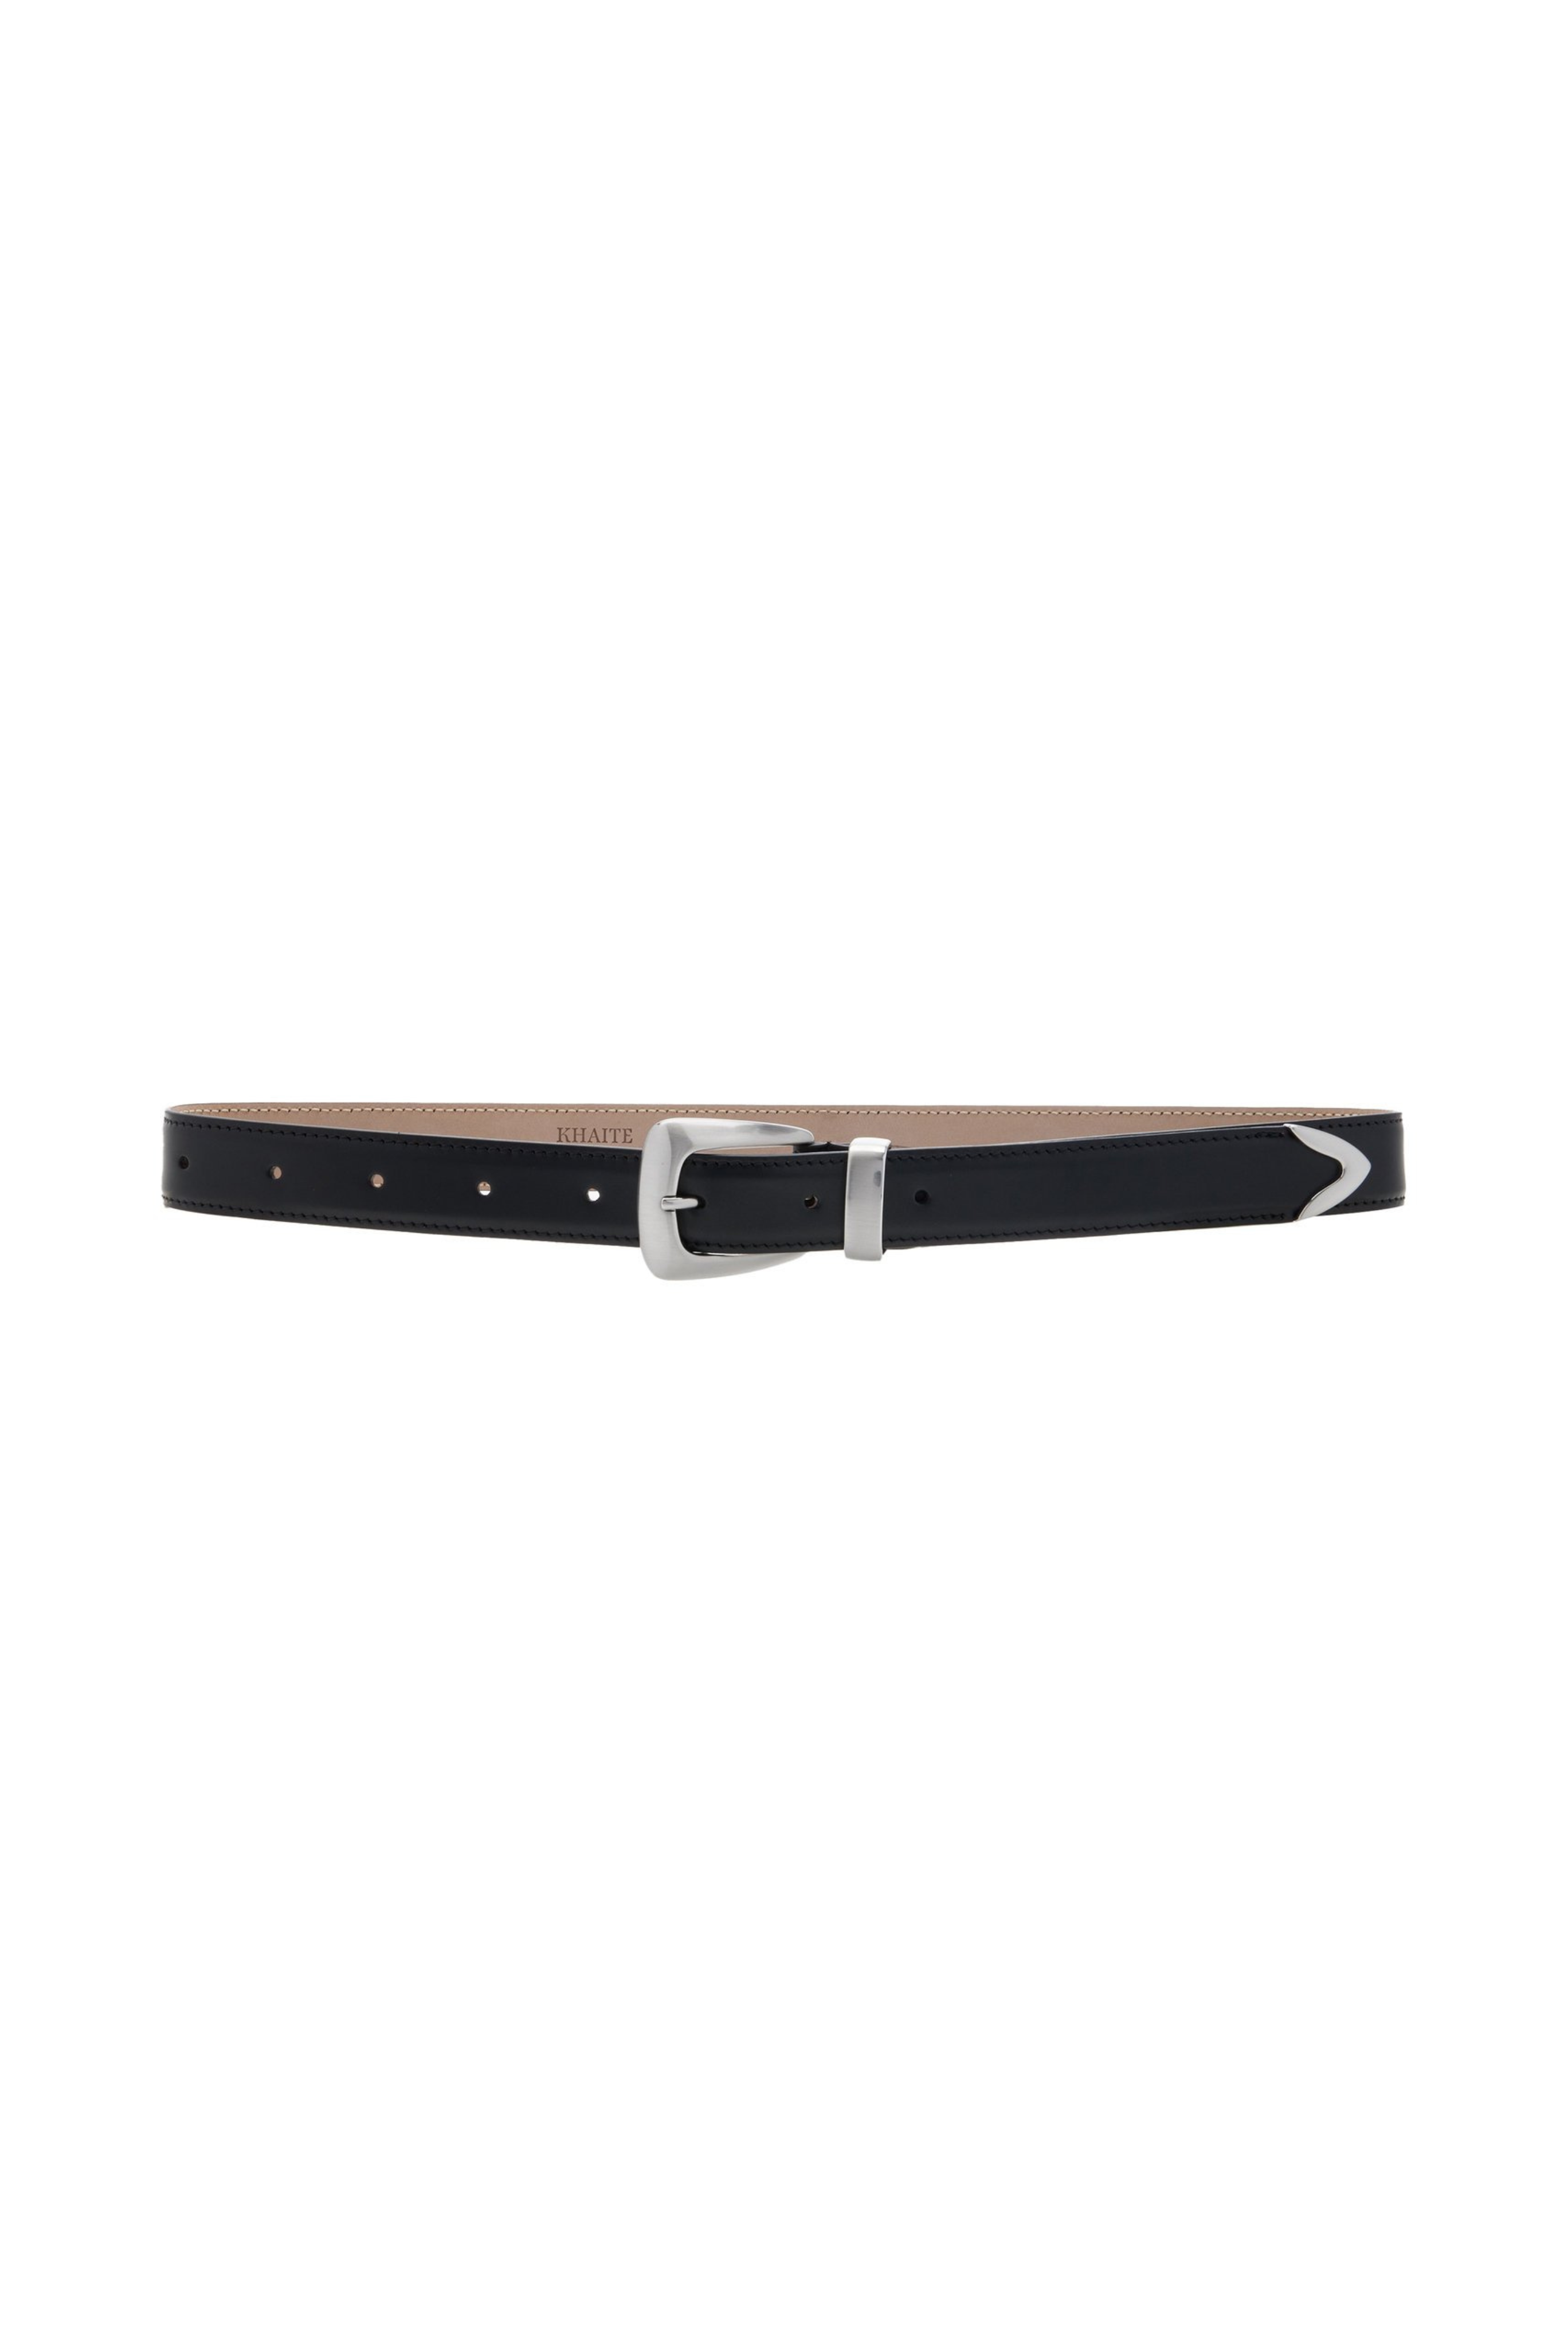 Benny Black Leather Belt